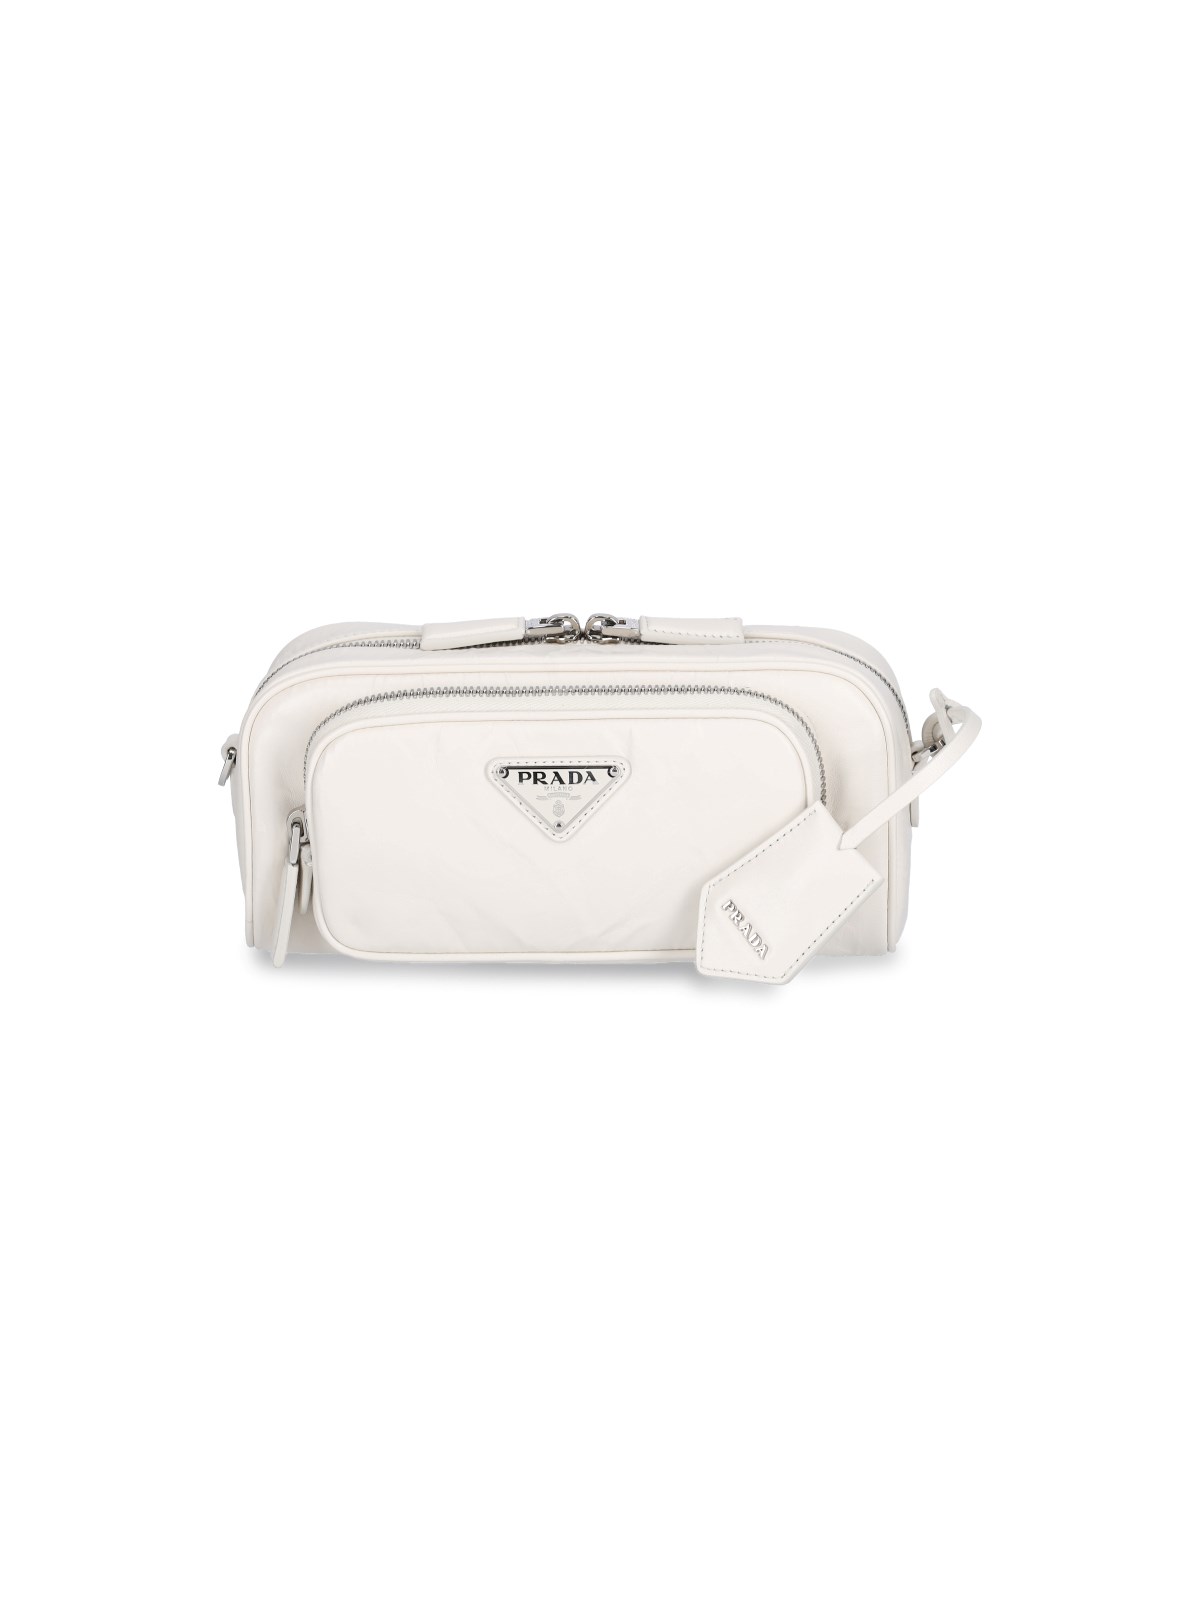 Prada Multi Pocket Crossbody Bag In Bianco